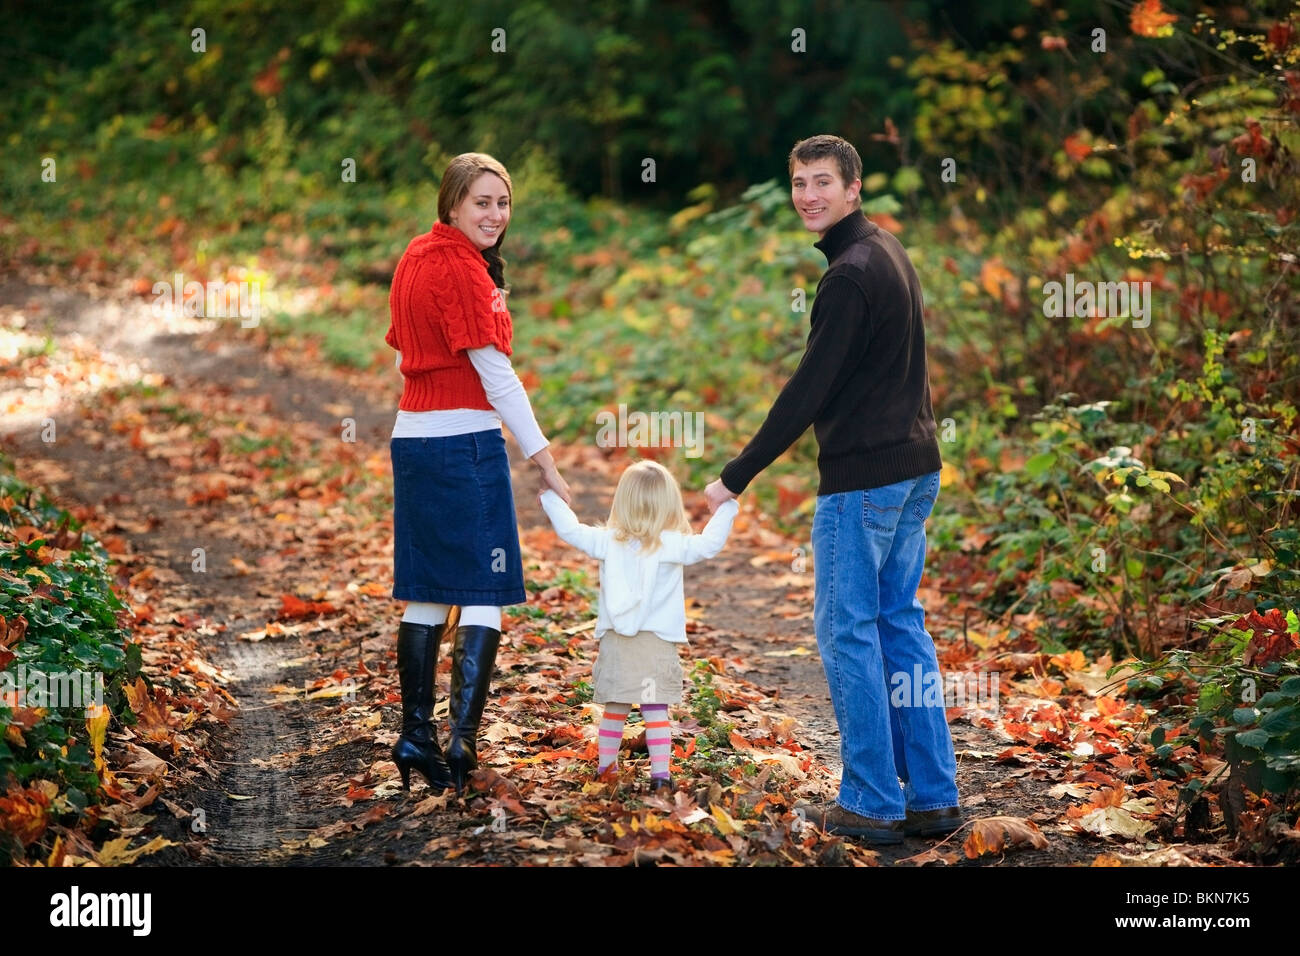 Una familia caminando por un sendero en otoño Foto de stock